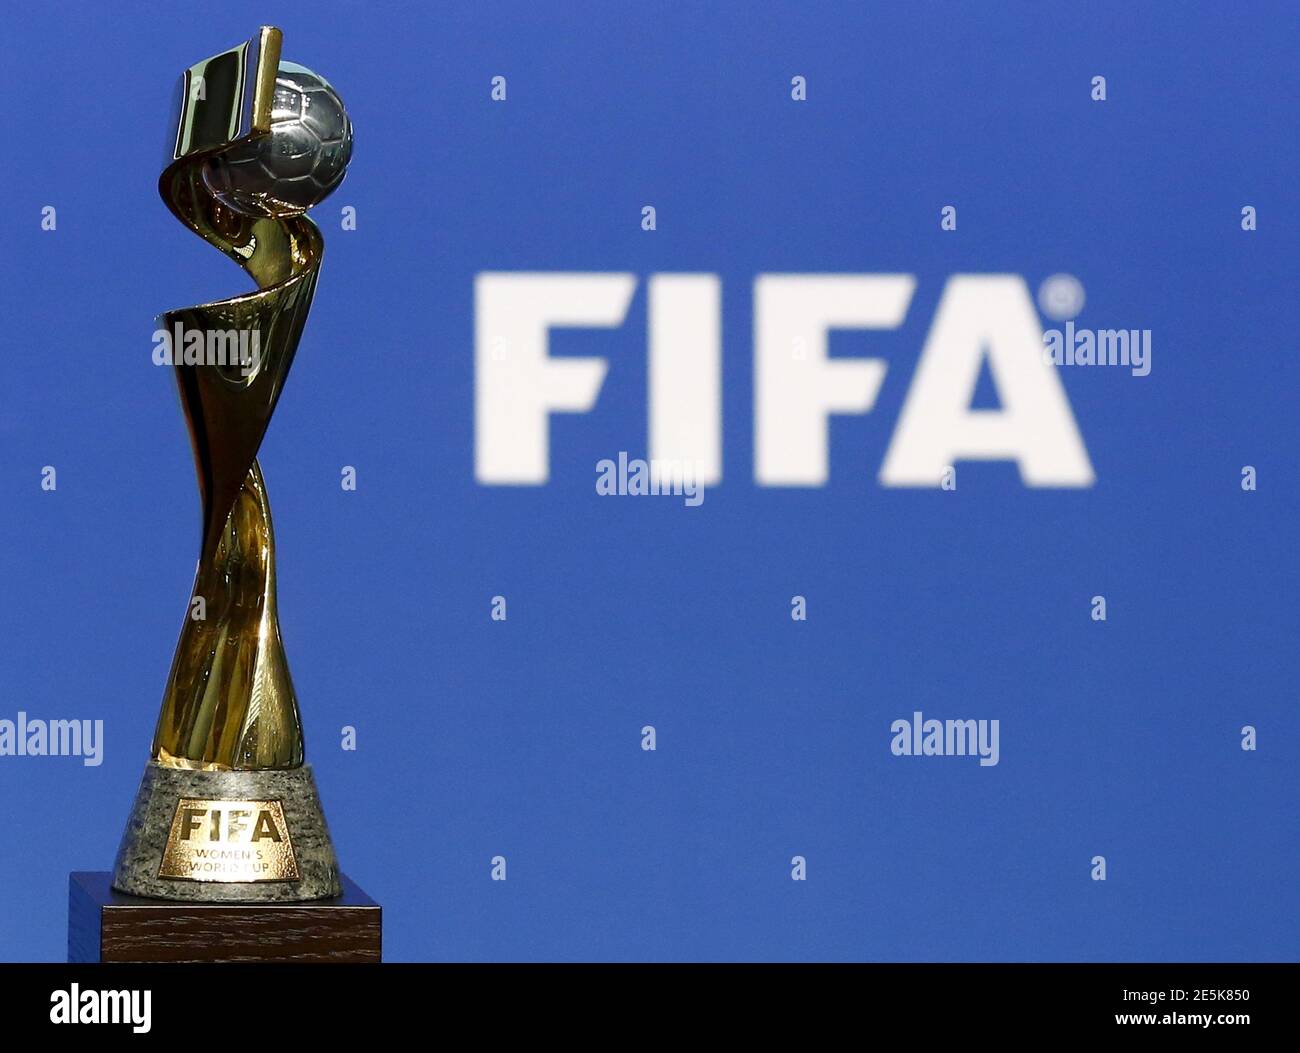 El trofeo de la FIFA de la Copa Mundial Femenina de la FIFA se ve antes de la ceremonia de anuncio de la Copa Mundial Femenina de la FIFA 2019 su